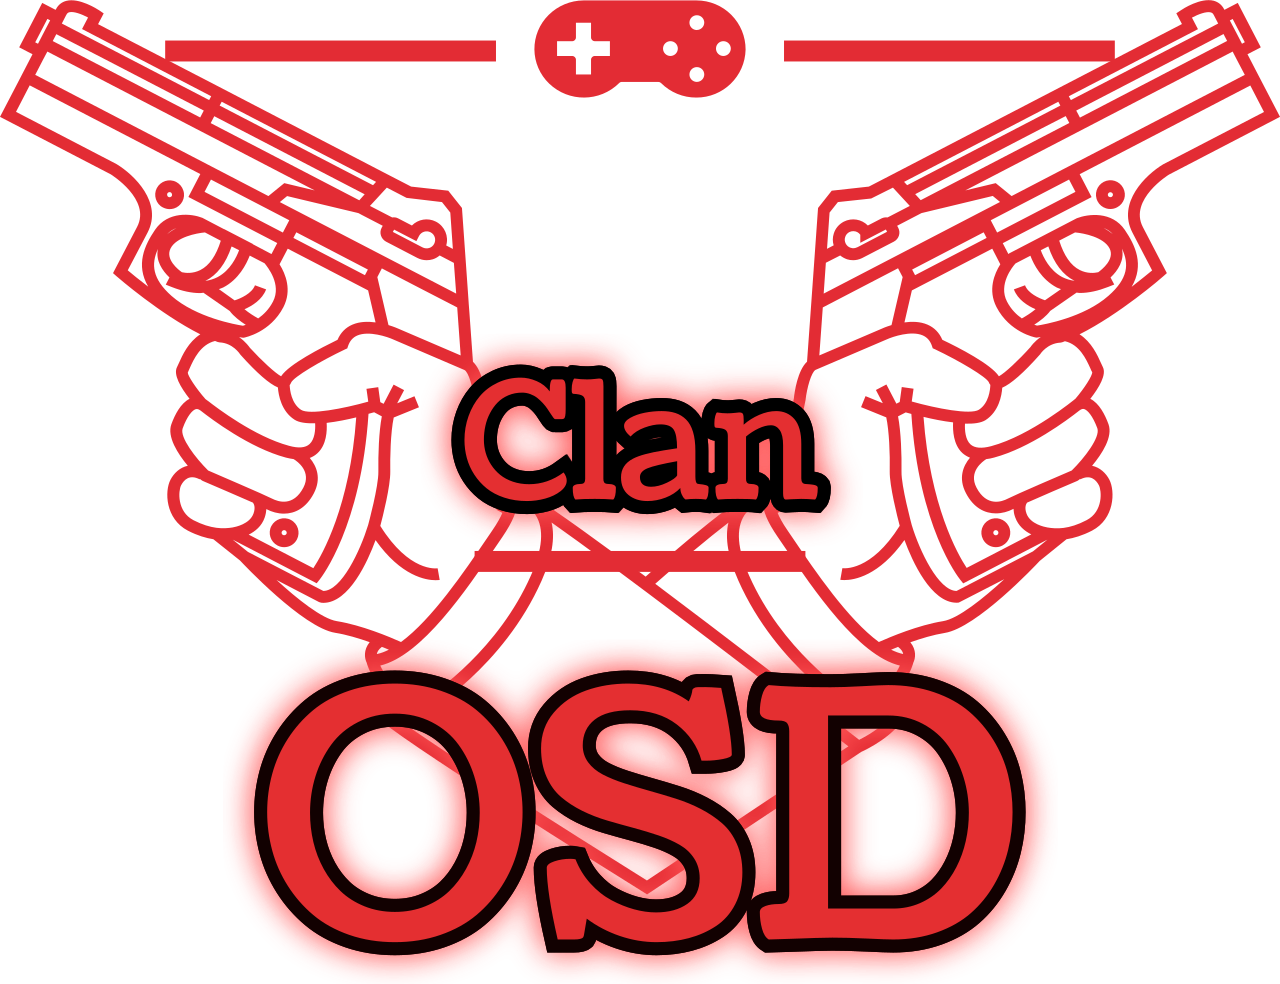 OSD's logo